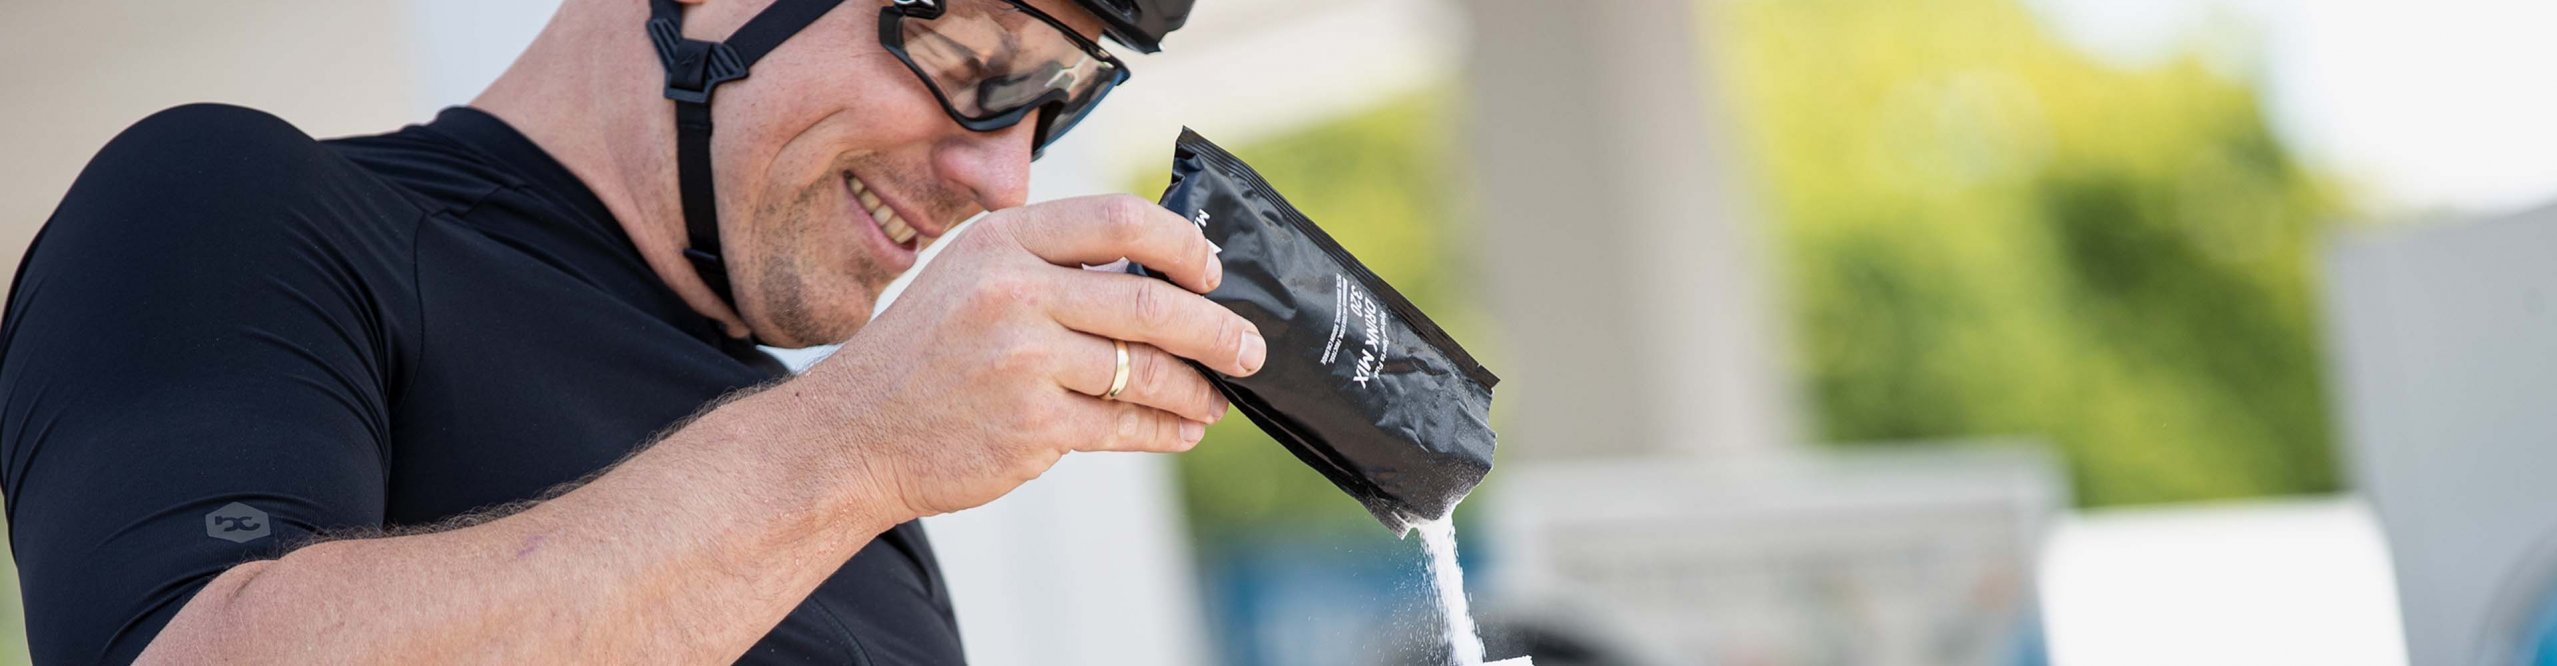 Radfahrer füllt seine Trinkflasche mit Elektrolytpulver auf.